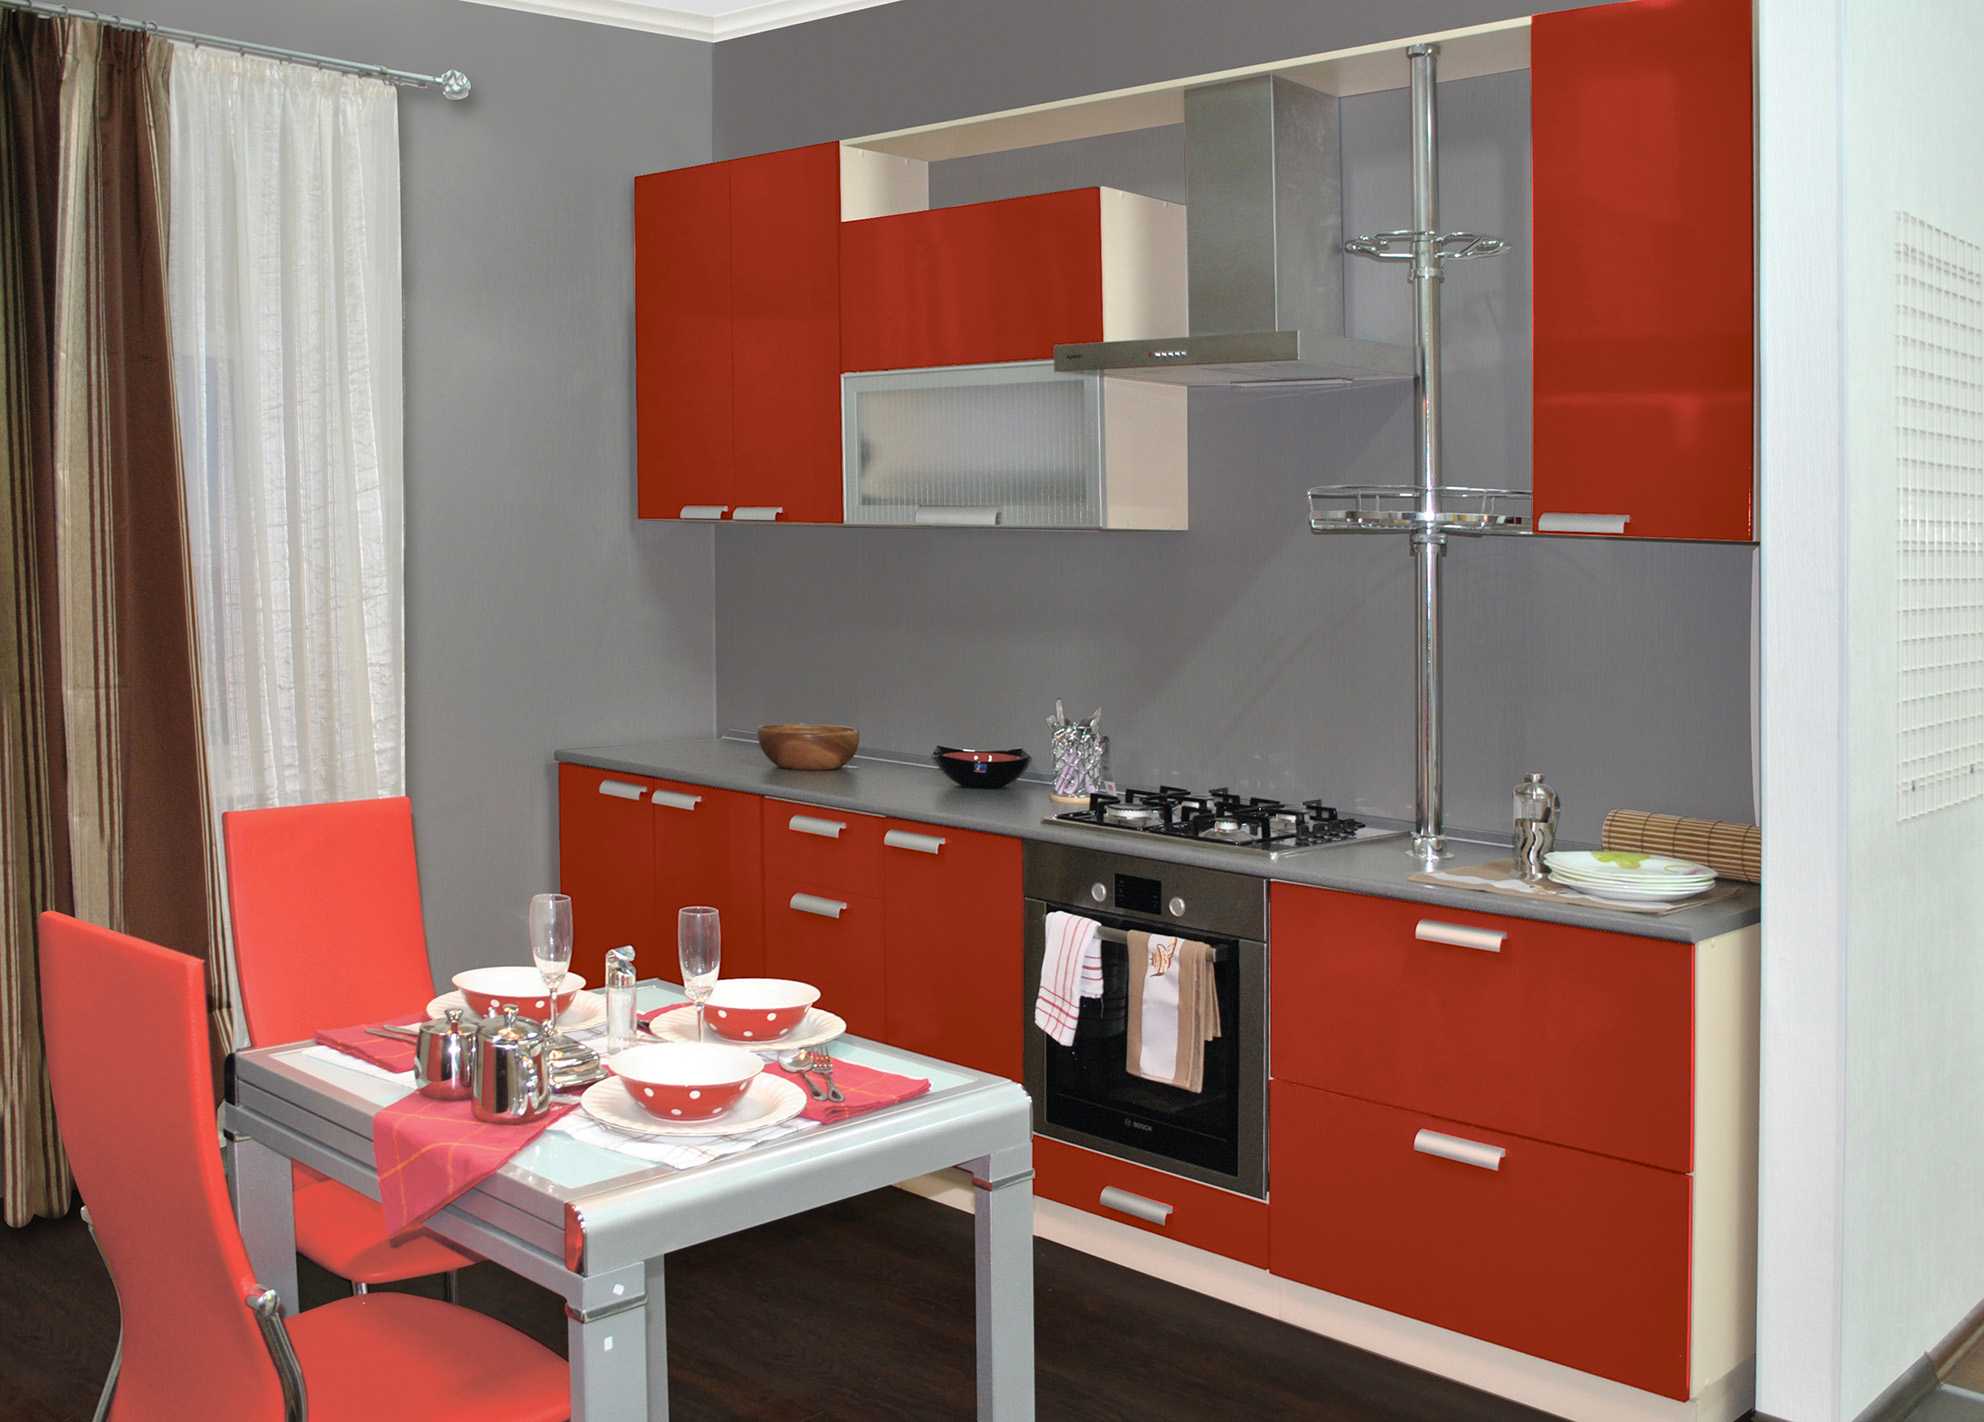 Кухонный гарнитур для маленькой кухни (98 фото): дизайн малогабаритной кухни, цвета небольших кухонных гарнитуров, готовые варианты экономкласса. какую модель лучше выбрать?